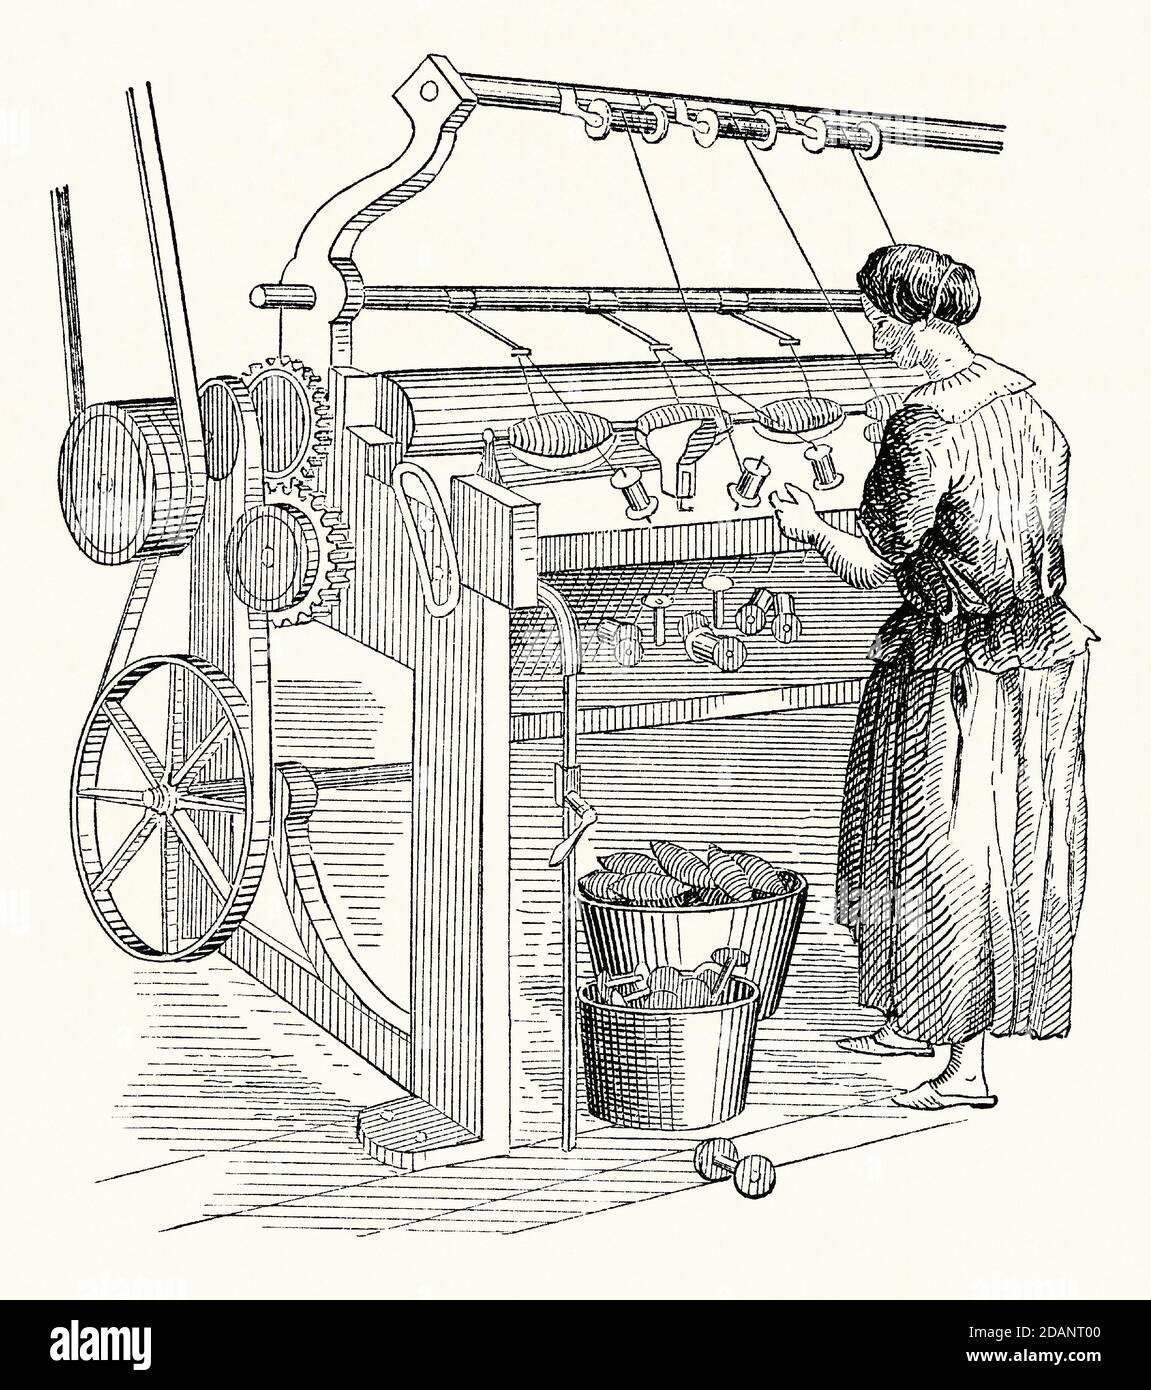 Eine alte Gravur einer Frau, die an einer Garngasmaschine in einer Textil- oder Tuchfabrik arbeitete. Sie stammt aus einem viktorianischen Maschinenbaubuch der 1880er Jahre. In der Textilherstellung ist die Begasung der Prozess der neu gesponnenen Garn schnell durch eine Flamme, um die losen Faserenden zu entfernen. Unter der bandbetriebenen Maschine sind neben den Holzgarnspulen die Boxen des Gewindes auf den Spindeln zu sehen. Stockfoto